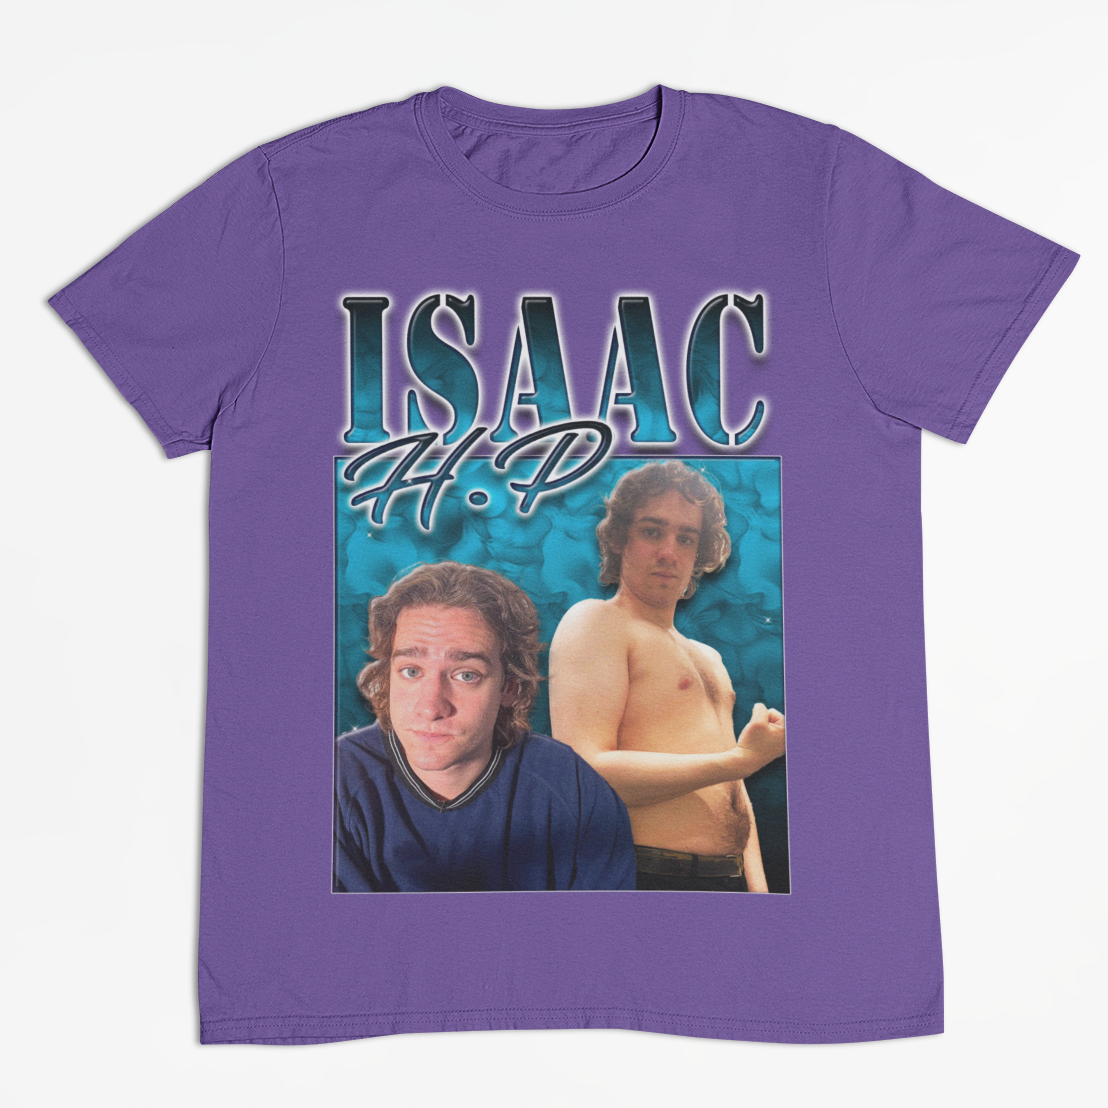 Isaac H.P Vintage t-shirt